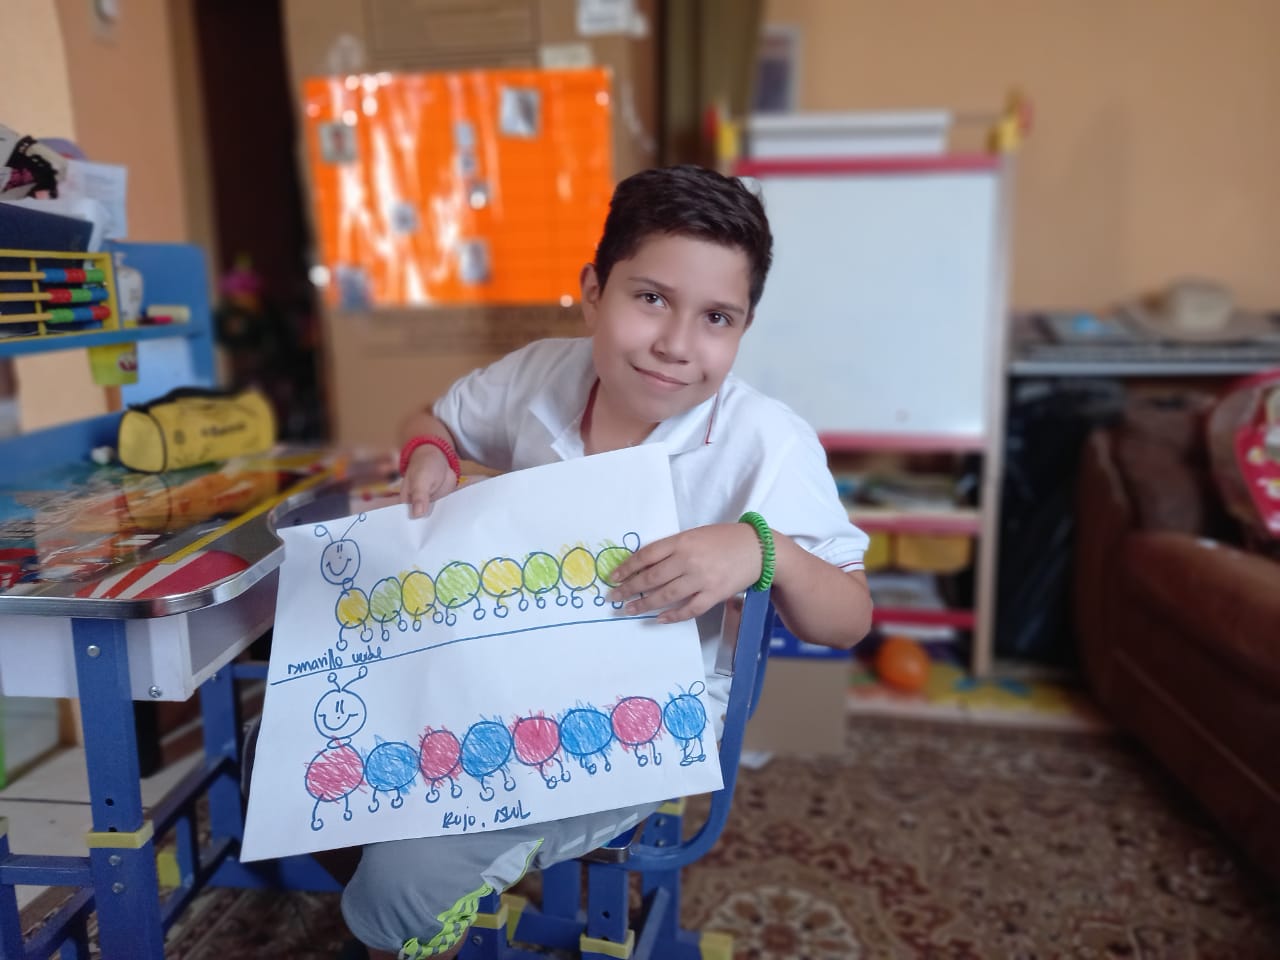 DíaDelAustismo: Joshua Cardona, un niño que regala alegría